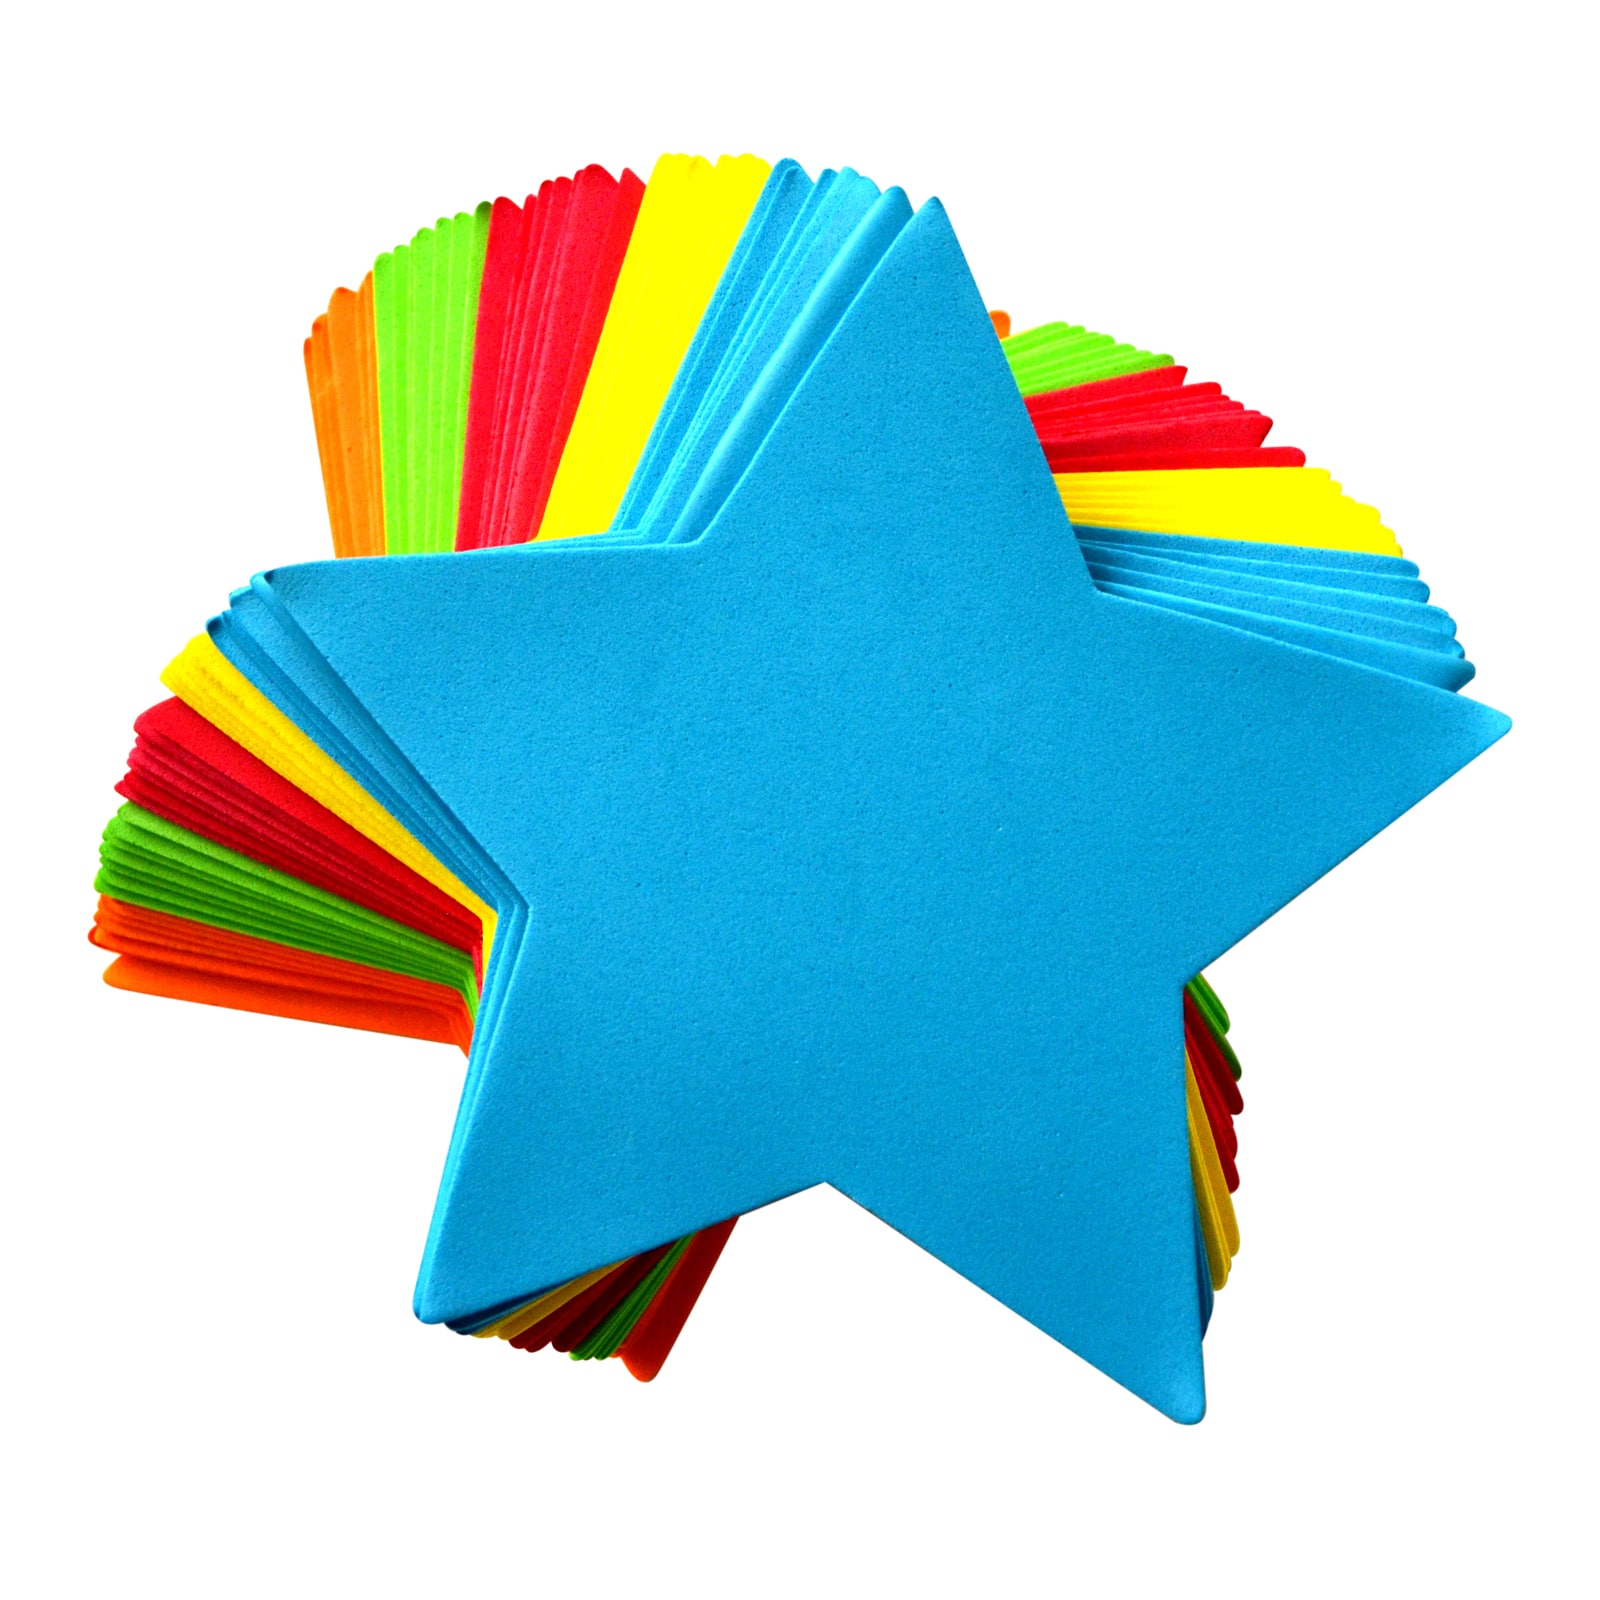 Glitter Star Foam Stickers for Scrapbooks Art and Crafts in 3